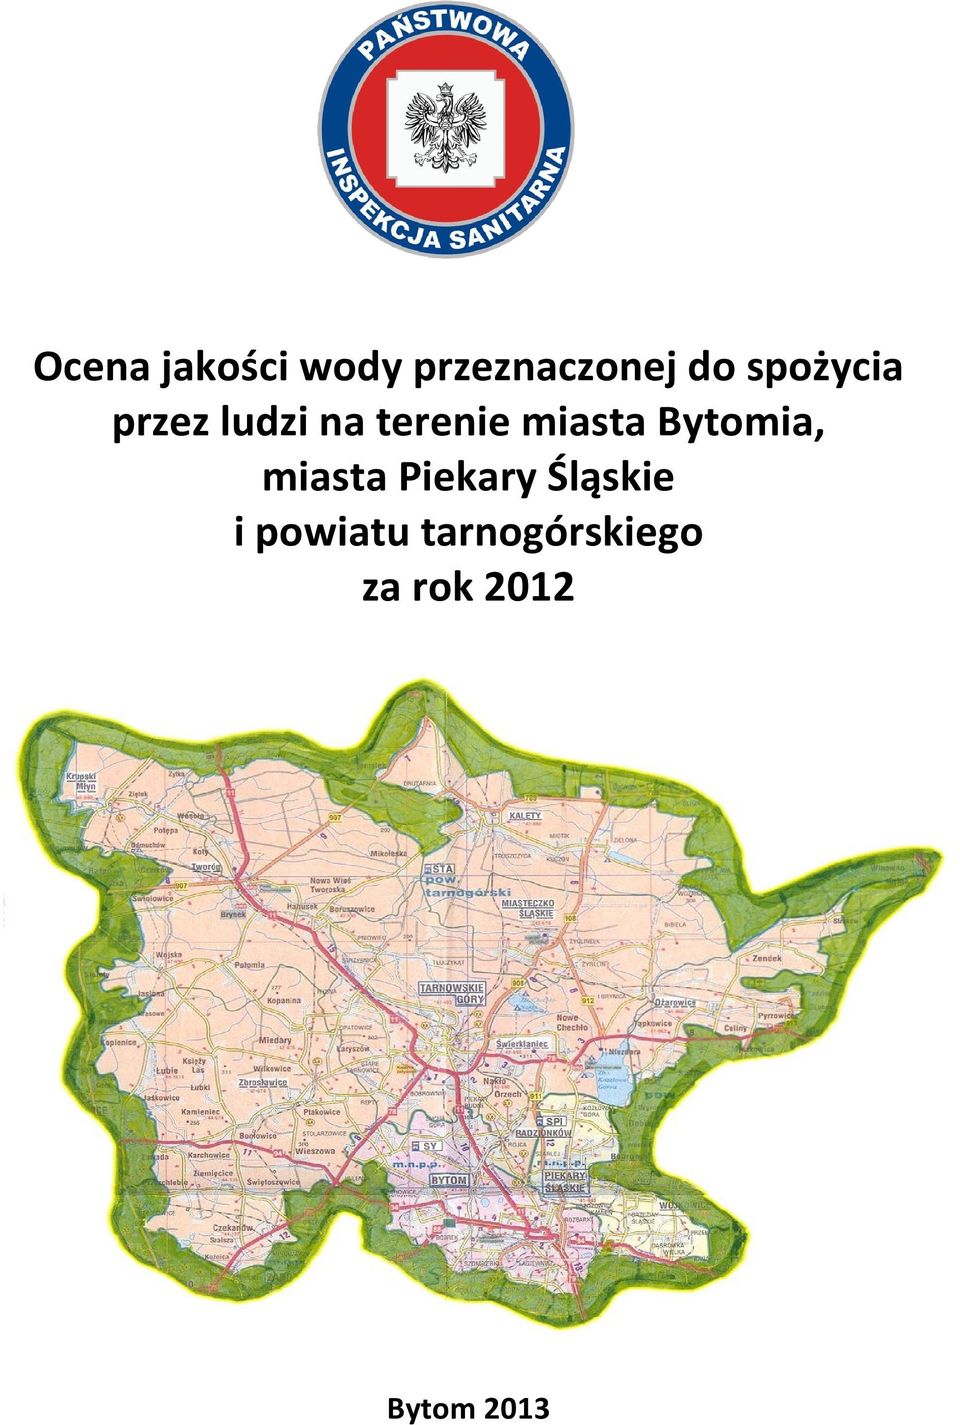 Bytomia, miasta Piekary Śląskie i